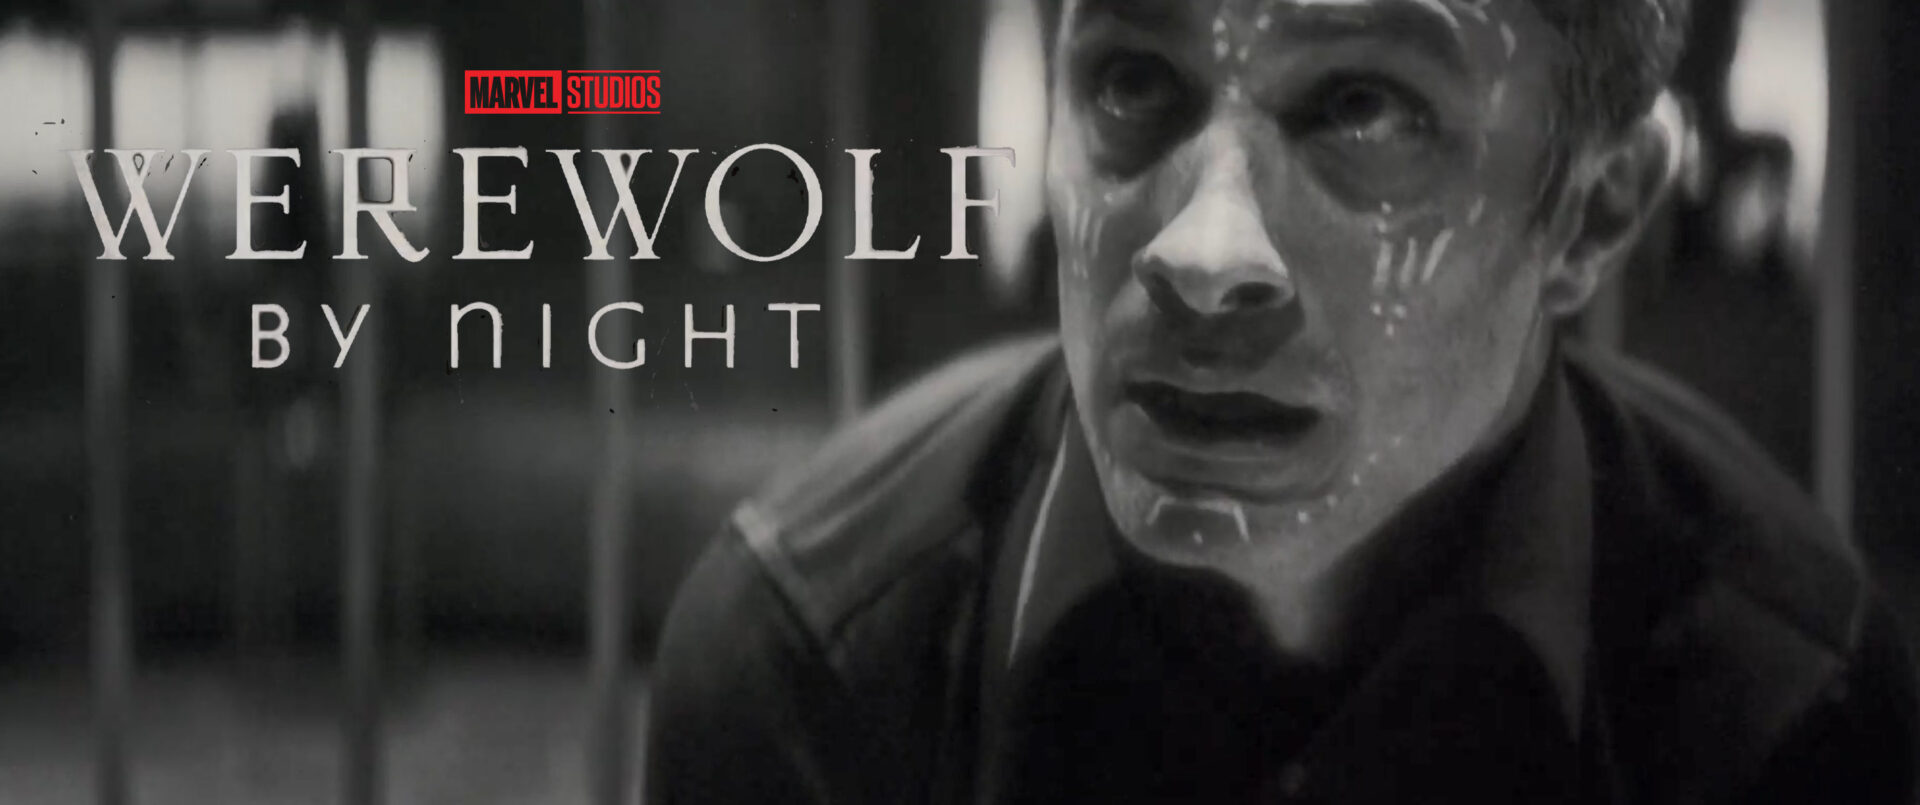 werewolf by night teaser trailer banner